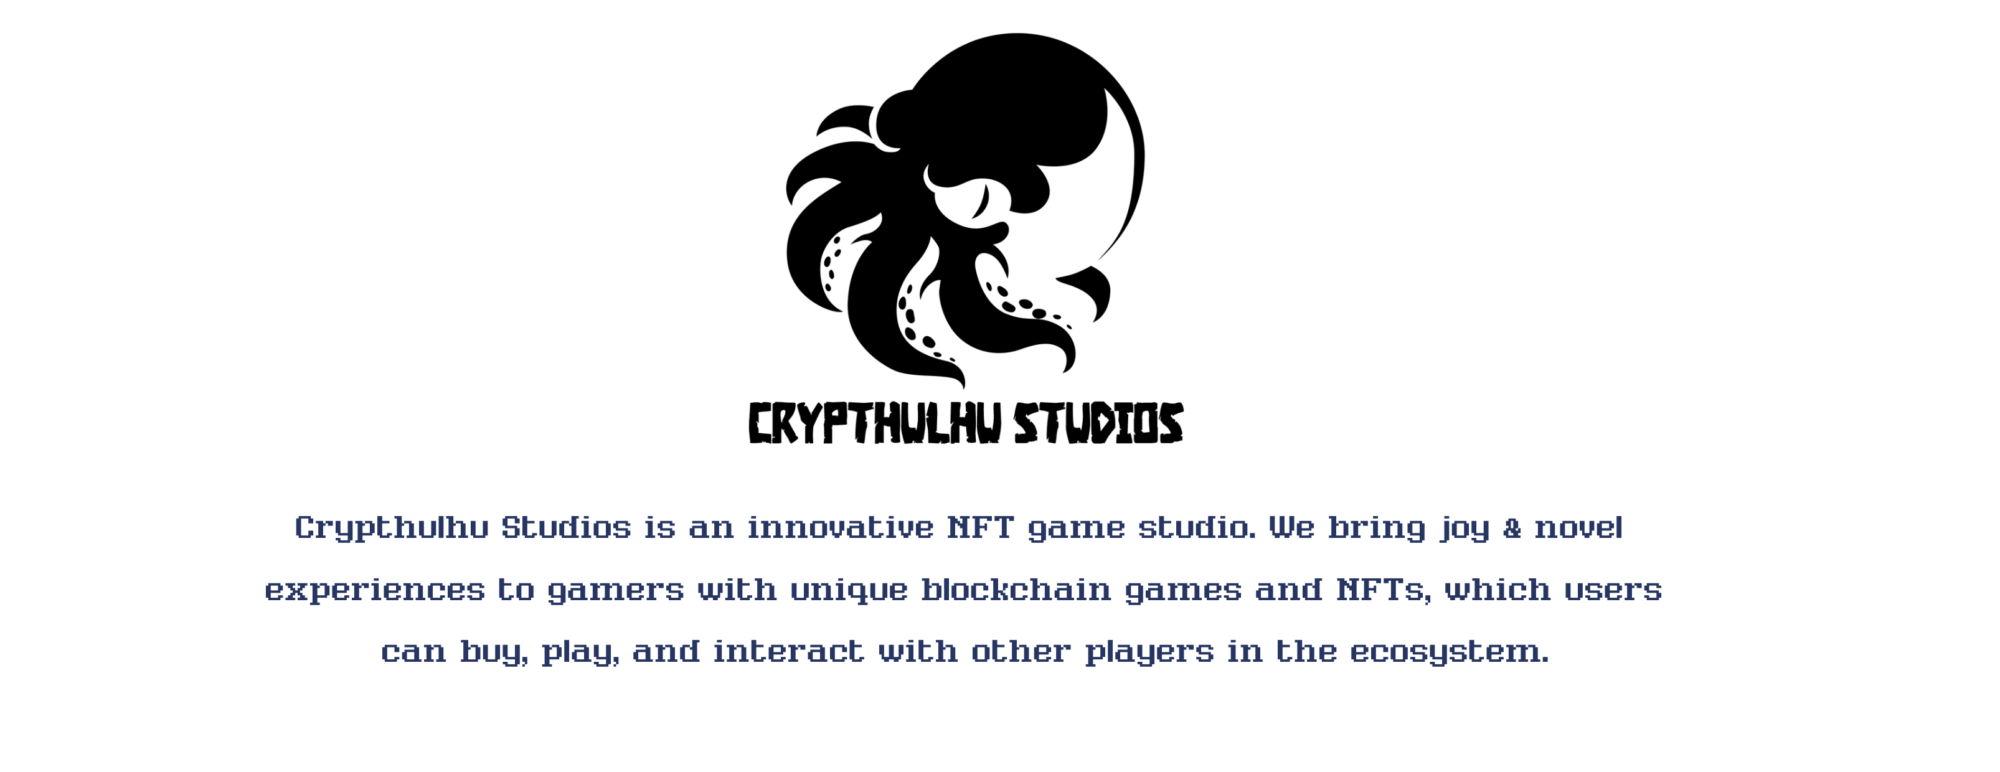 easy website design crypthulu studios